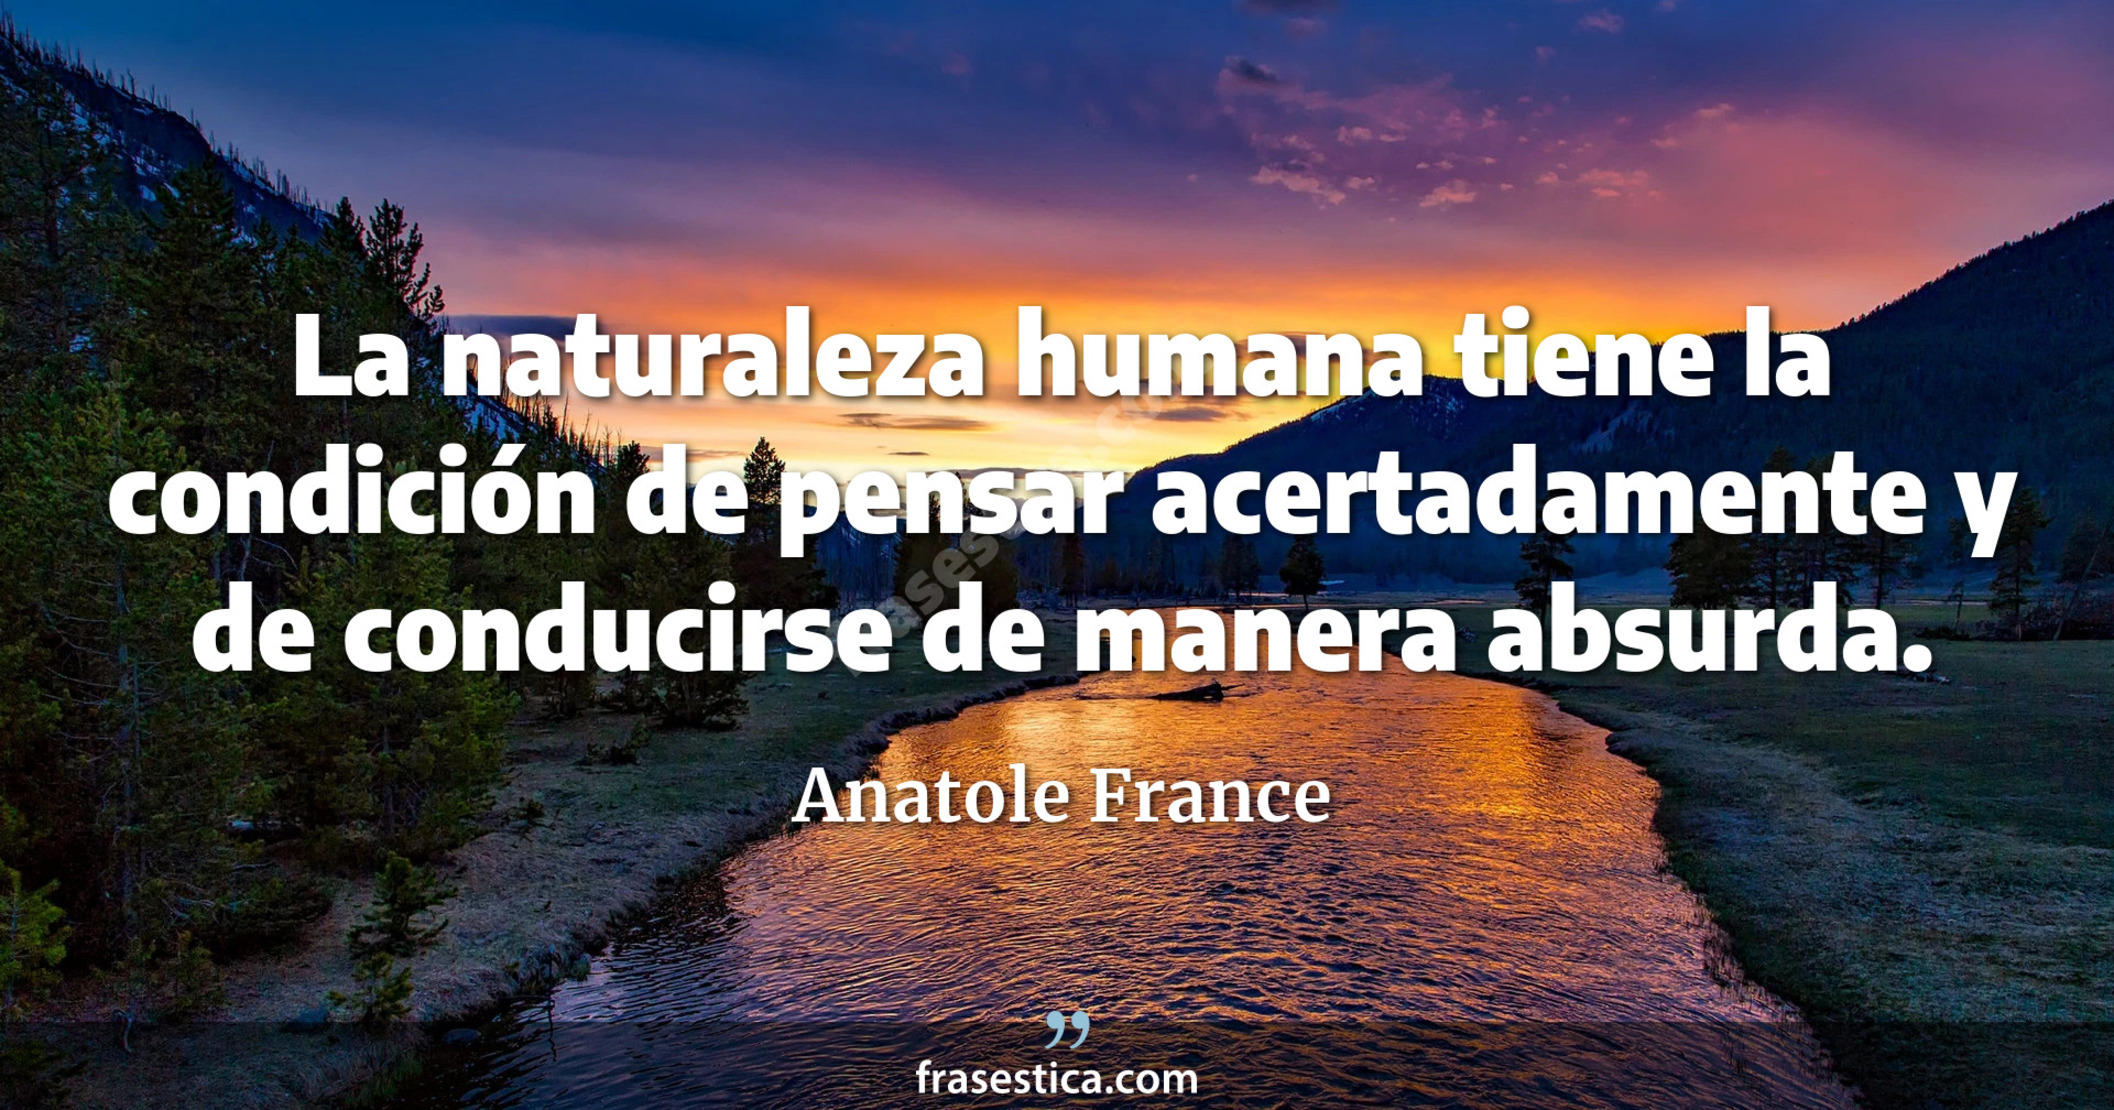 La naturaleza humana tiene la condición de pensar acertadamente y de conducirse de manera absurda. - Anatole France